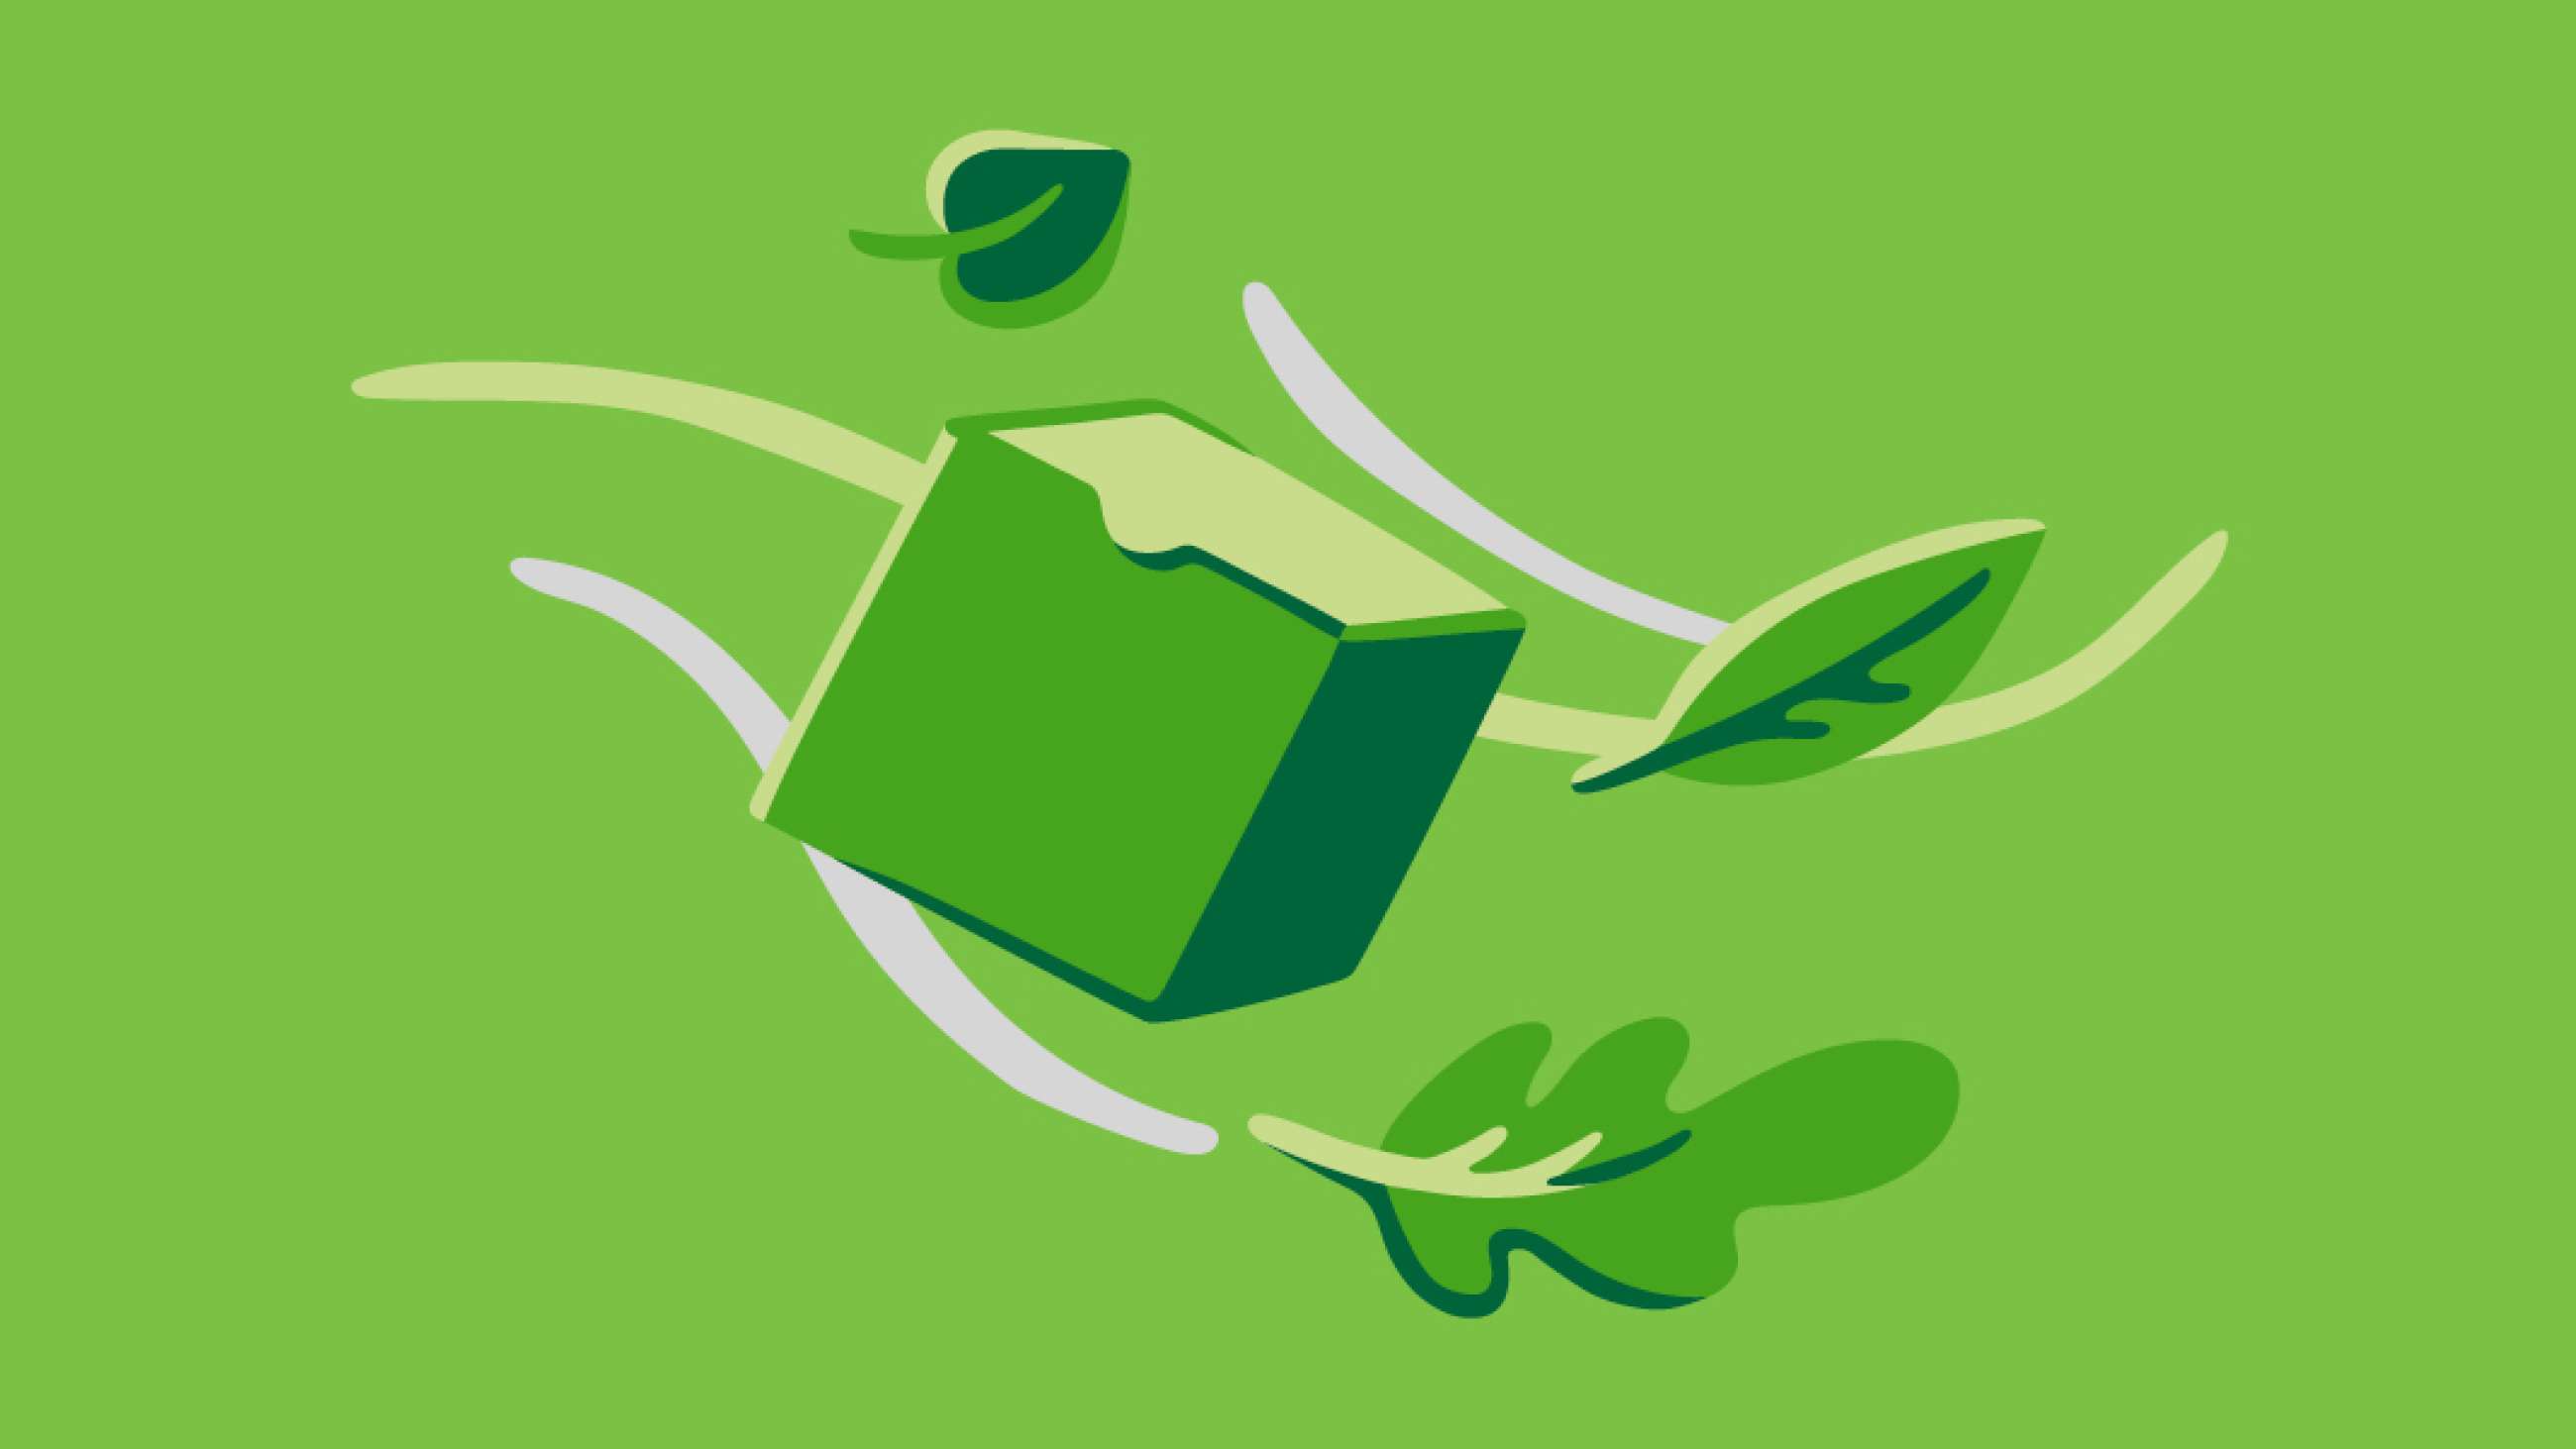 Grøn illustration af pakke og blade